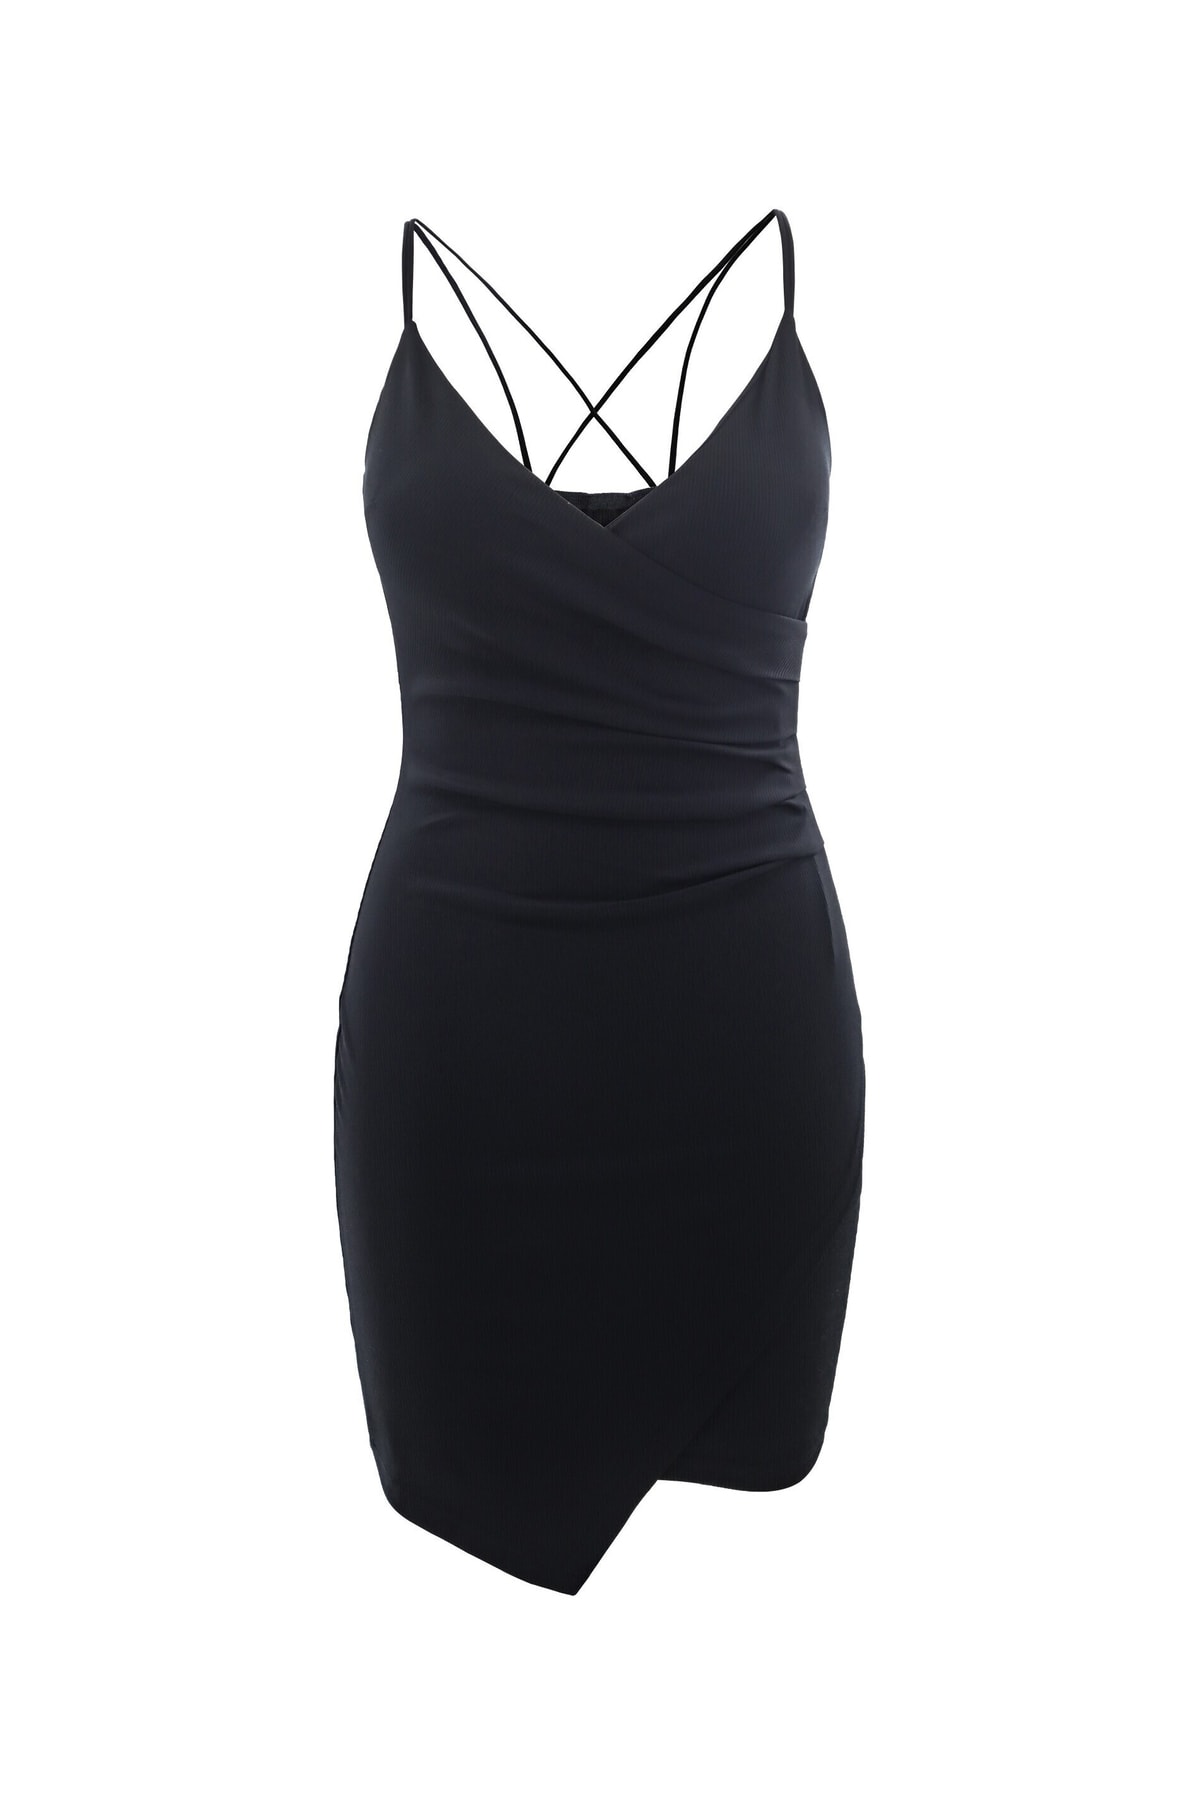 AIKI KEYLOOK Kleid Schwarz Asymmetrisch Fast ausverkauft